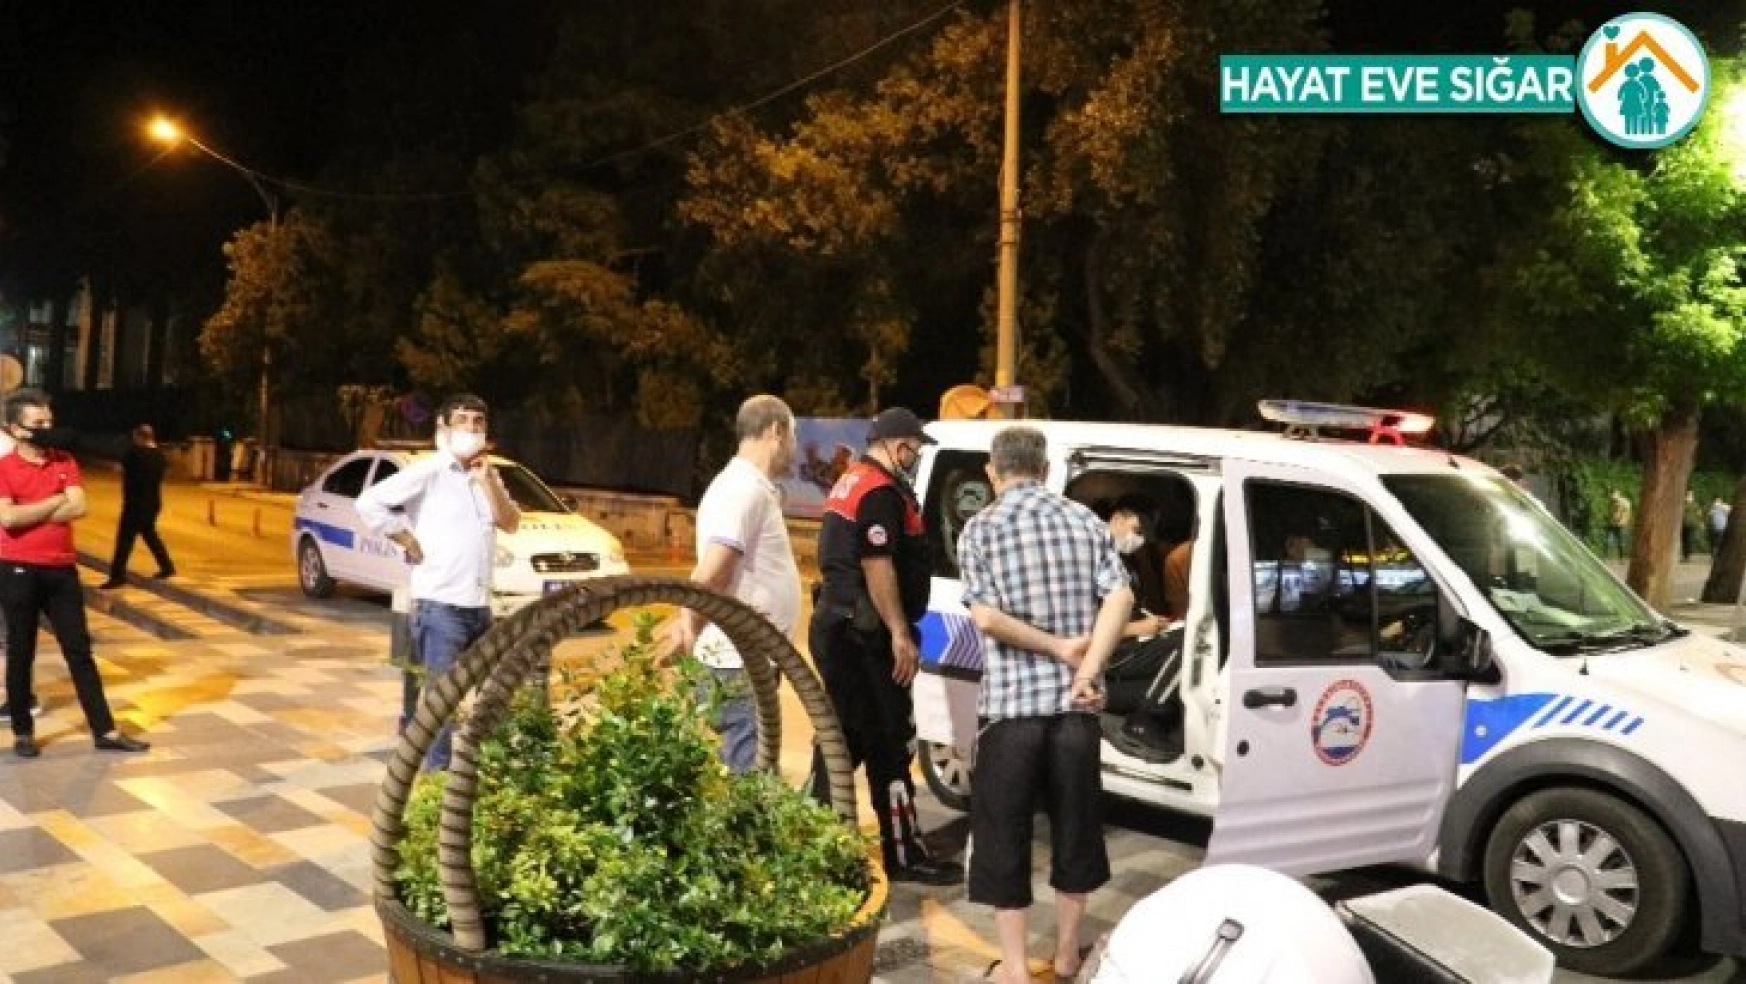 Kahramanmaraş'ta maskesiz gezen 101 kişiye ceza